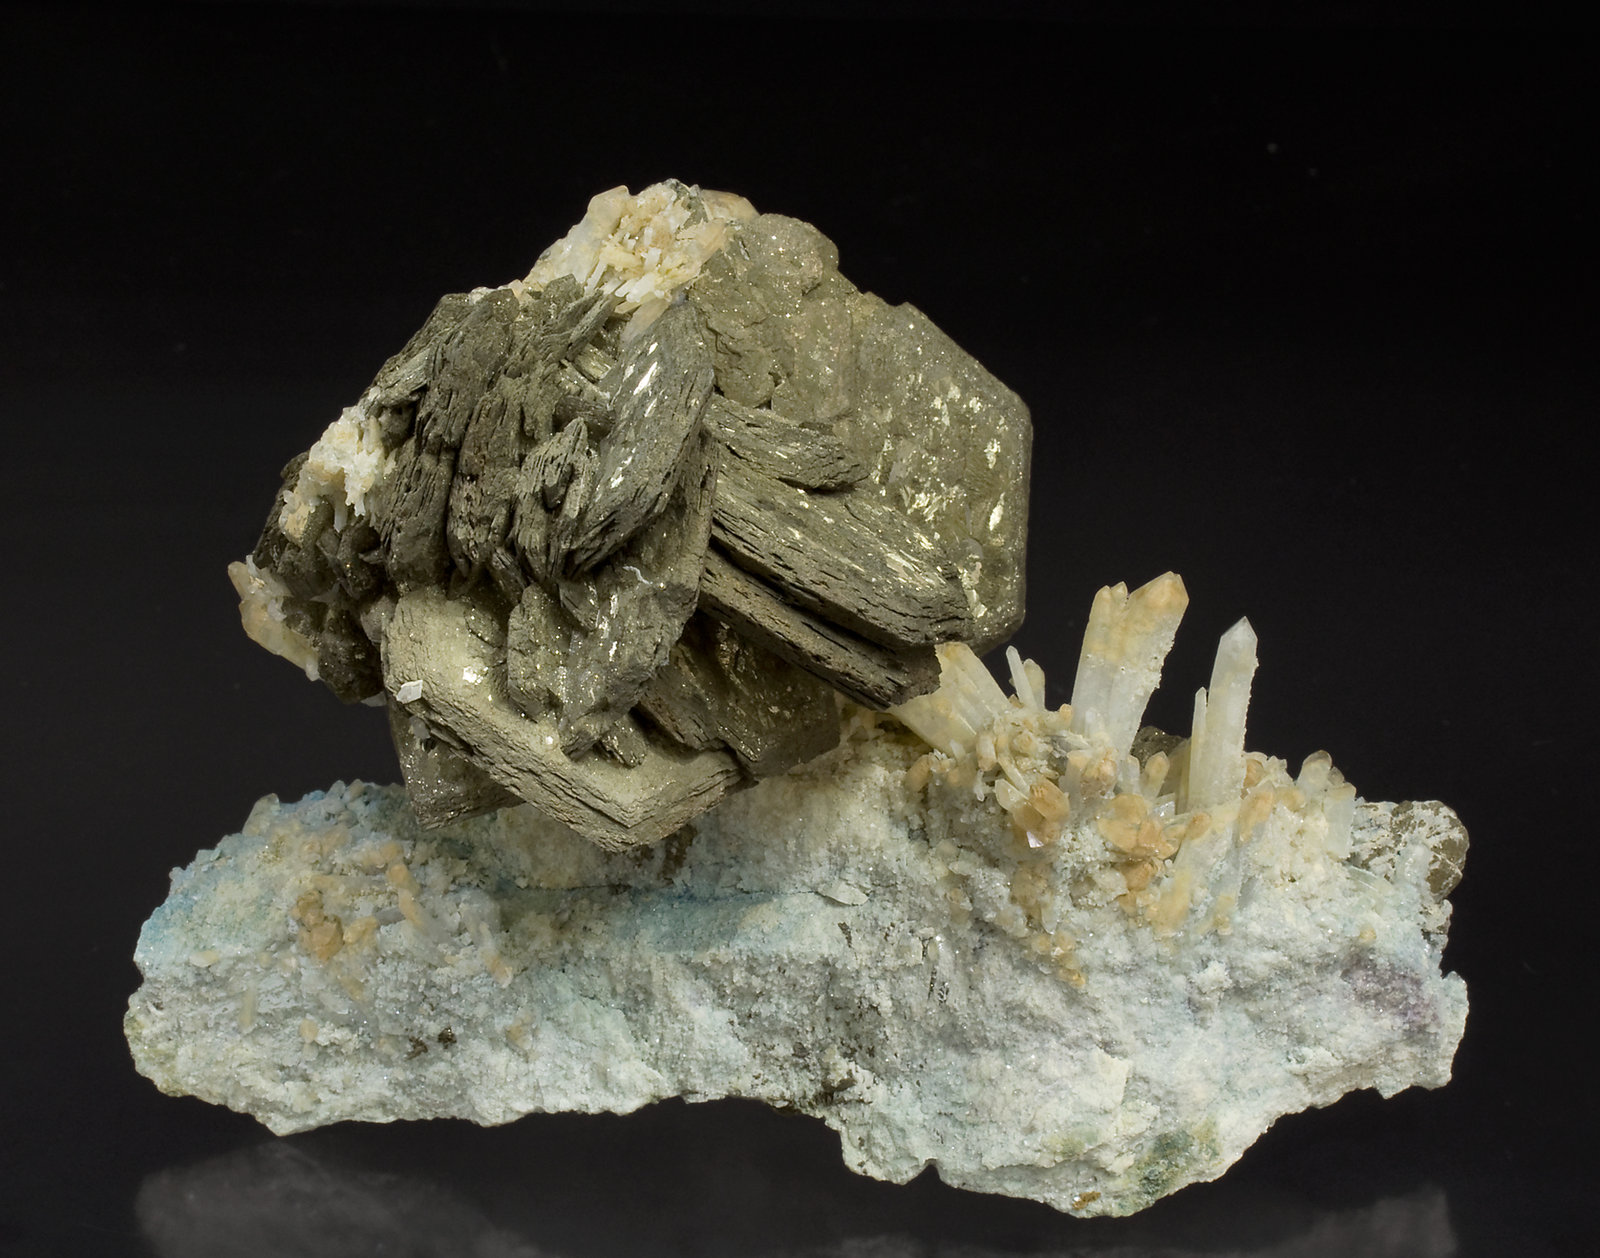 specimens/s_imagesW6/Pyrrhotite-JZ50W6f.jpg